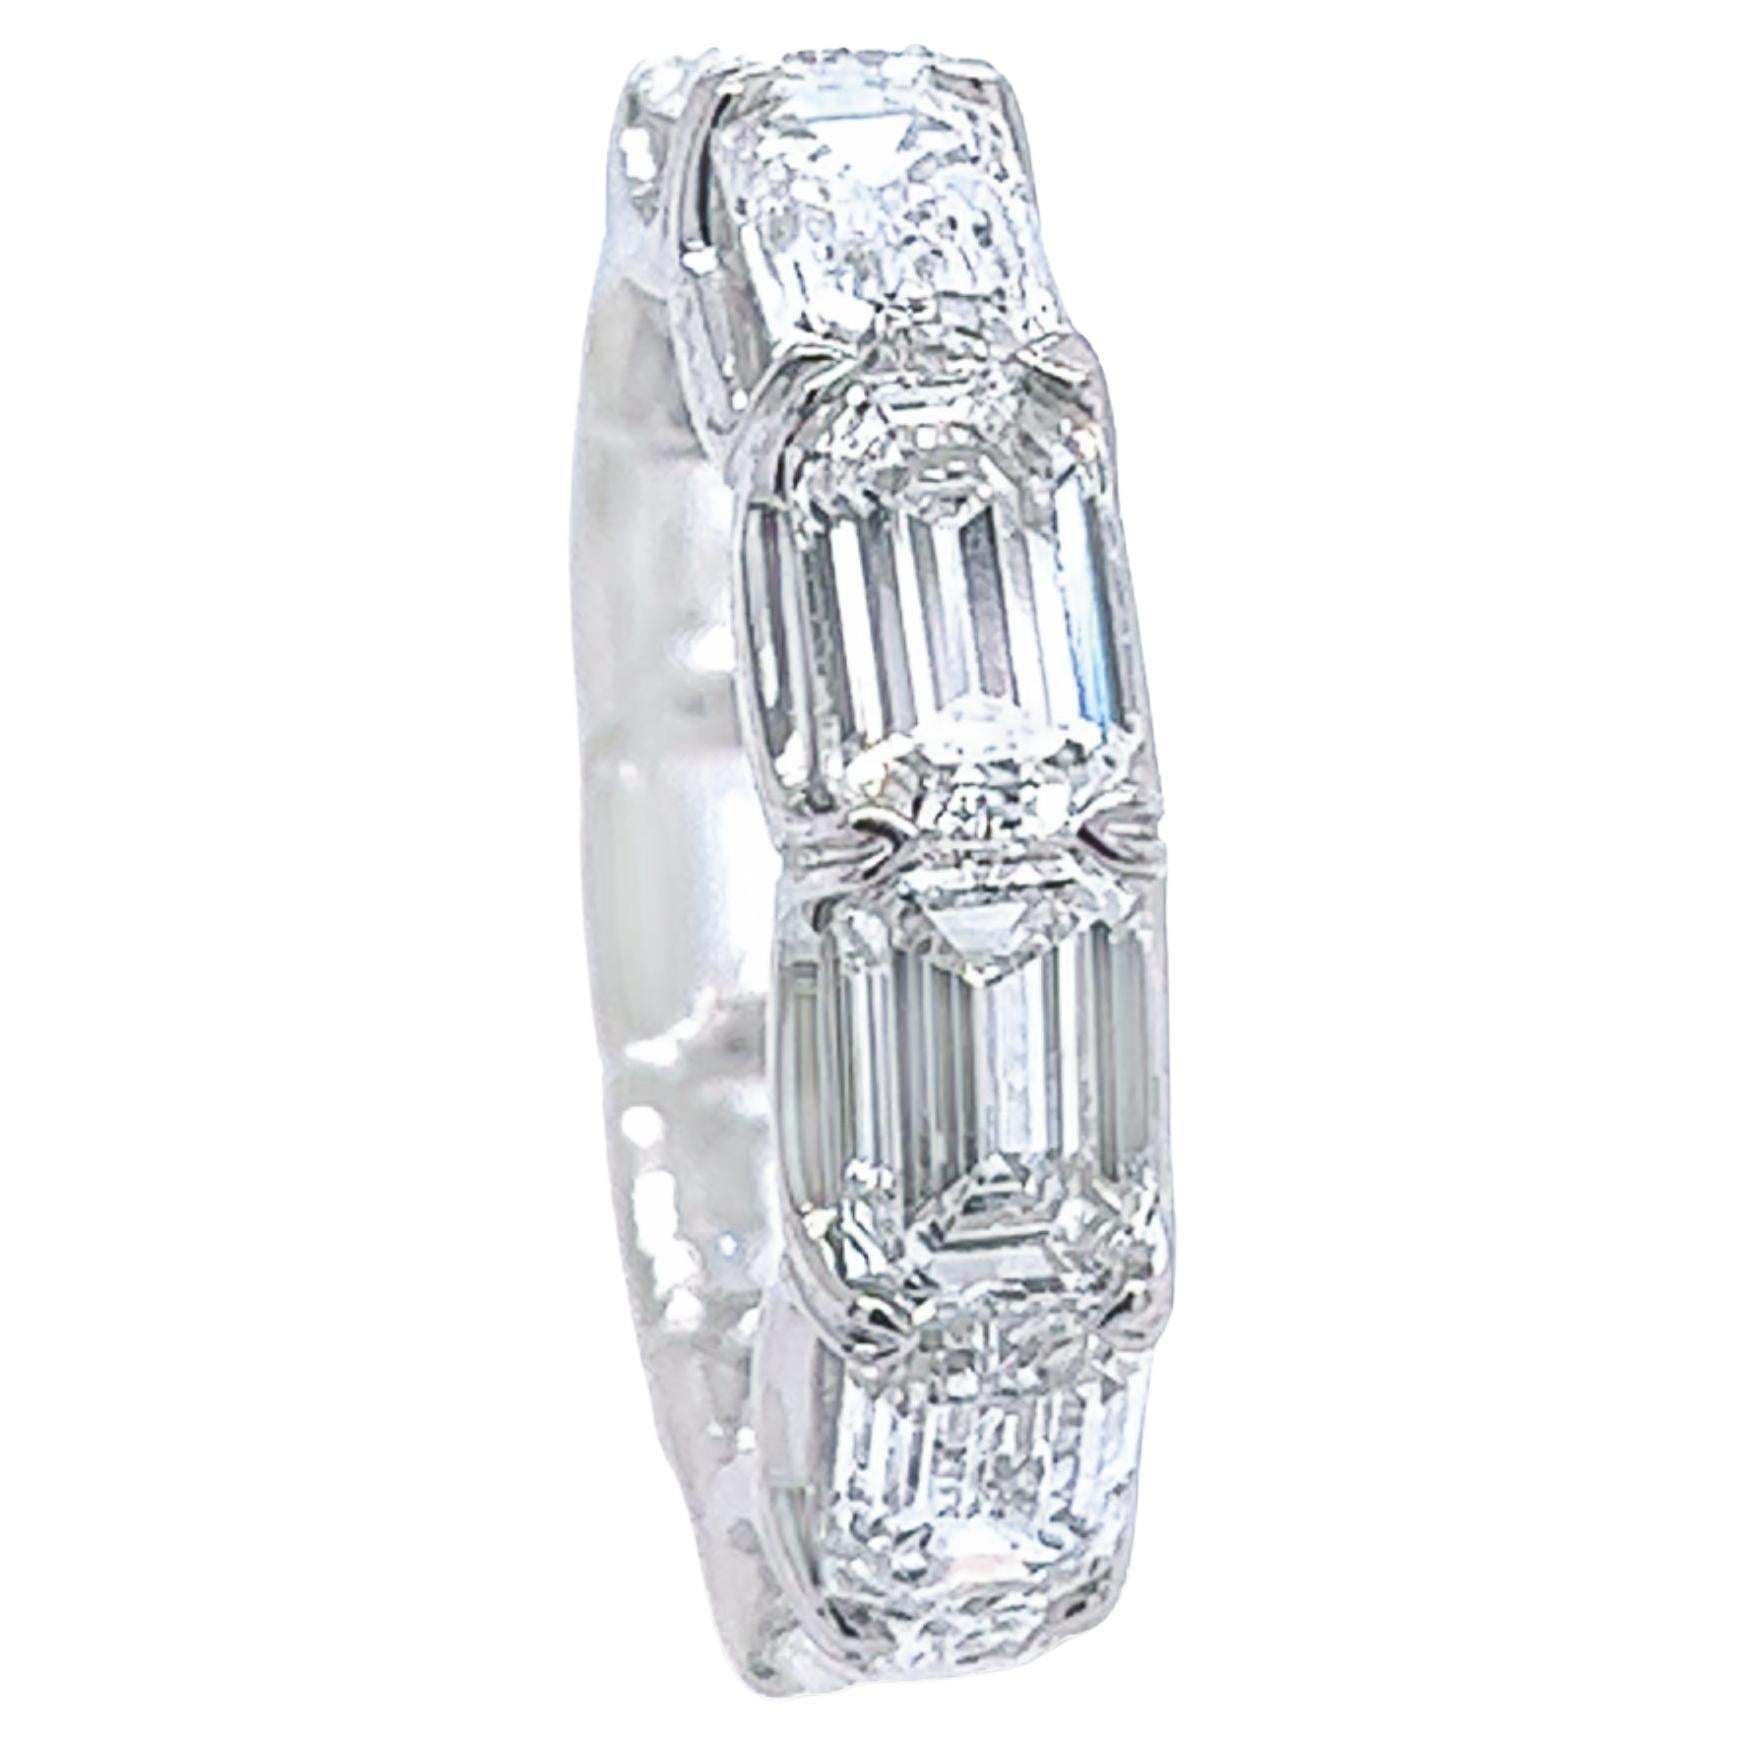 David Rosenberg, alliance d'éternité en diamants taille émeraude de 7,77 carats au total, certifiés GIA